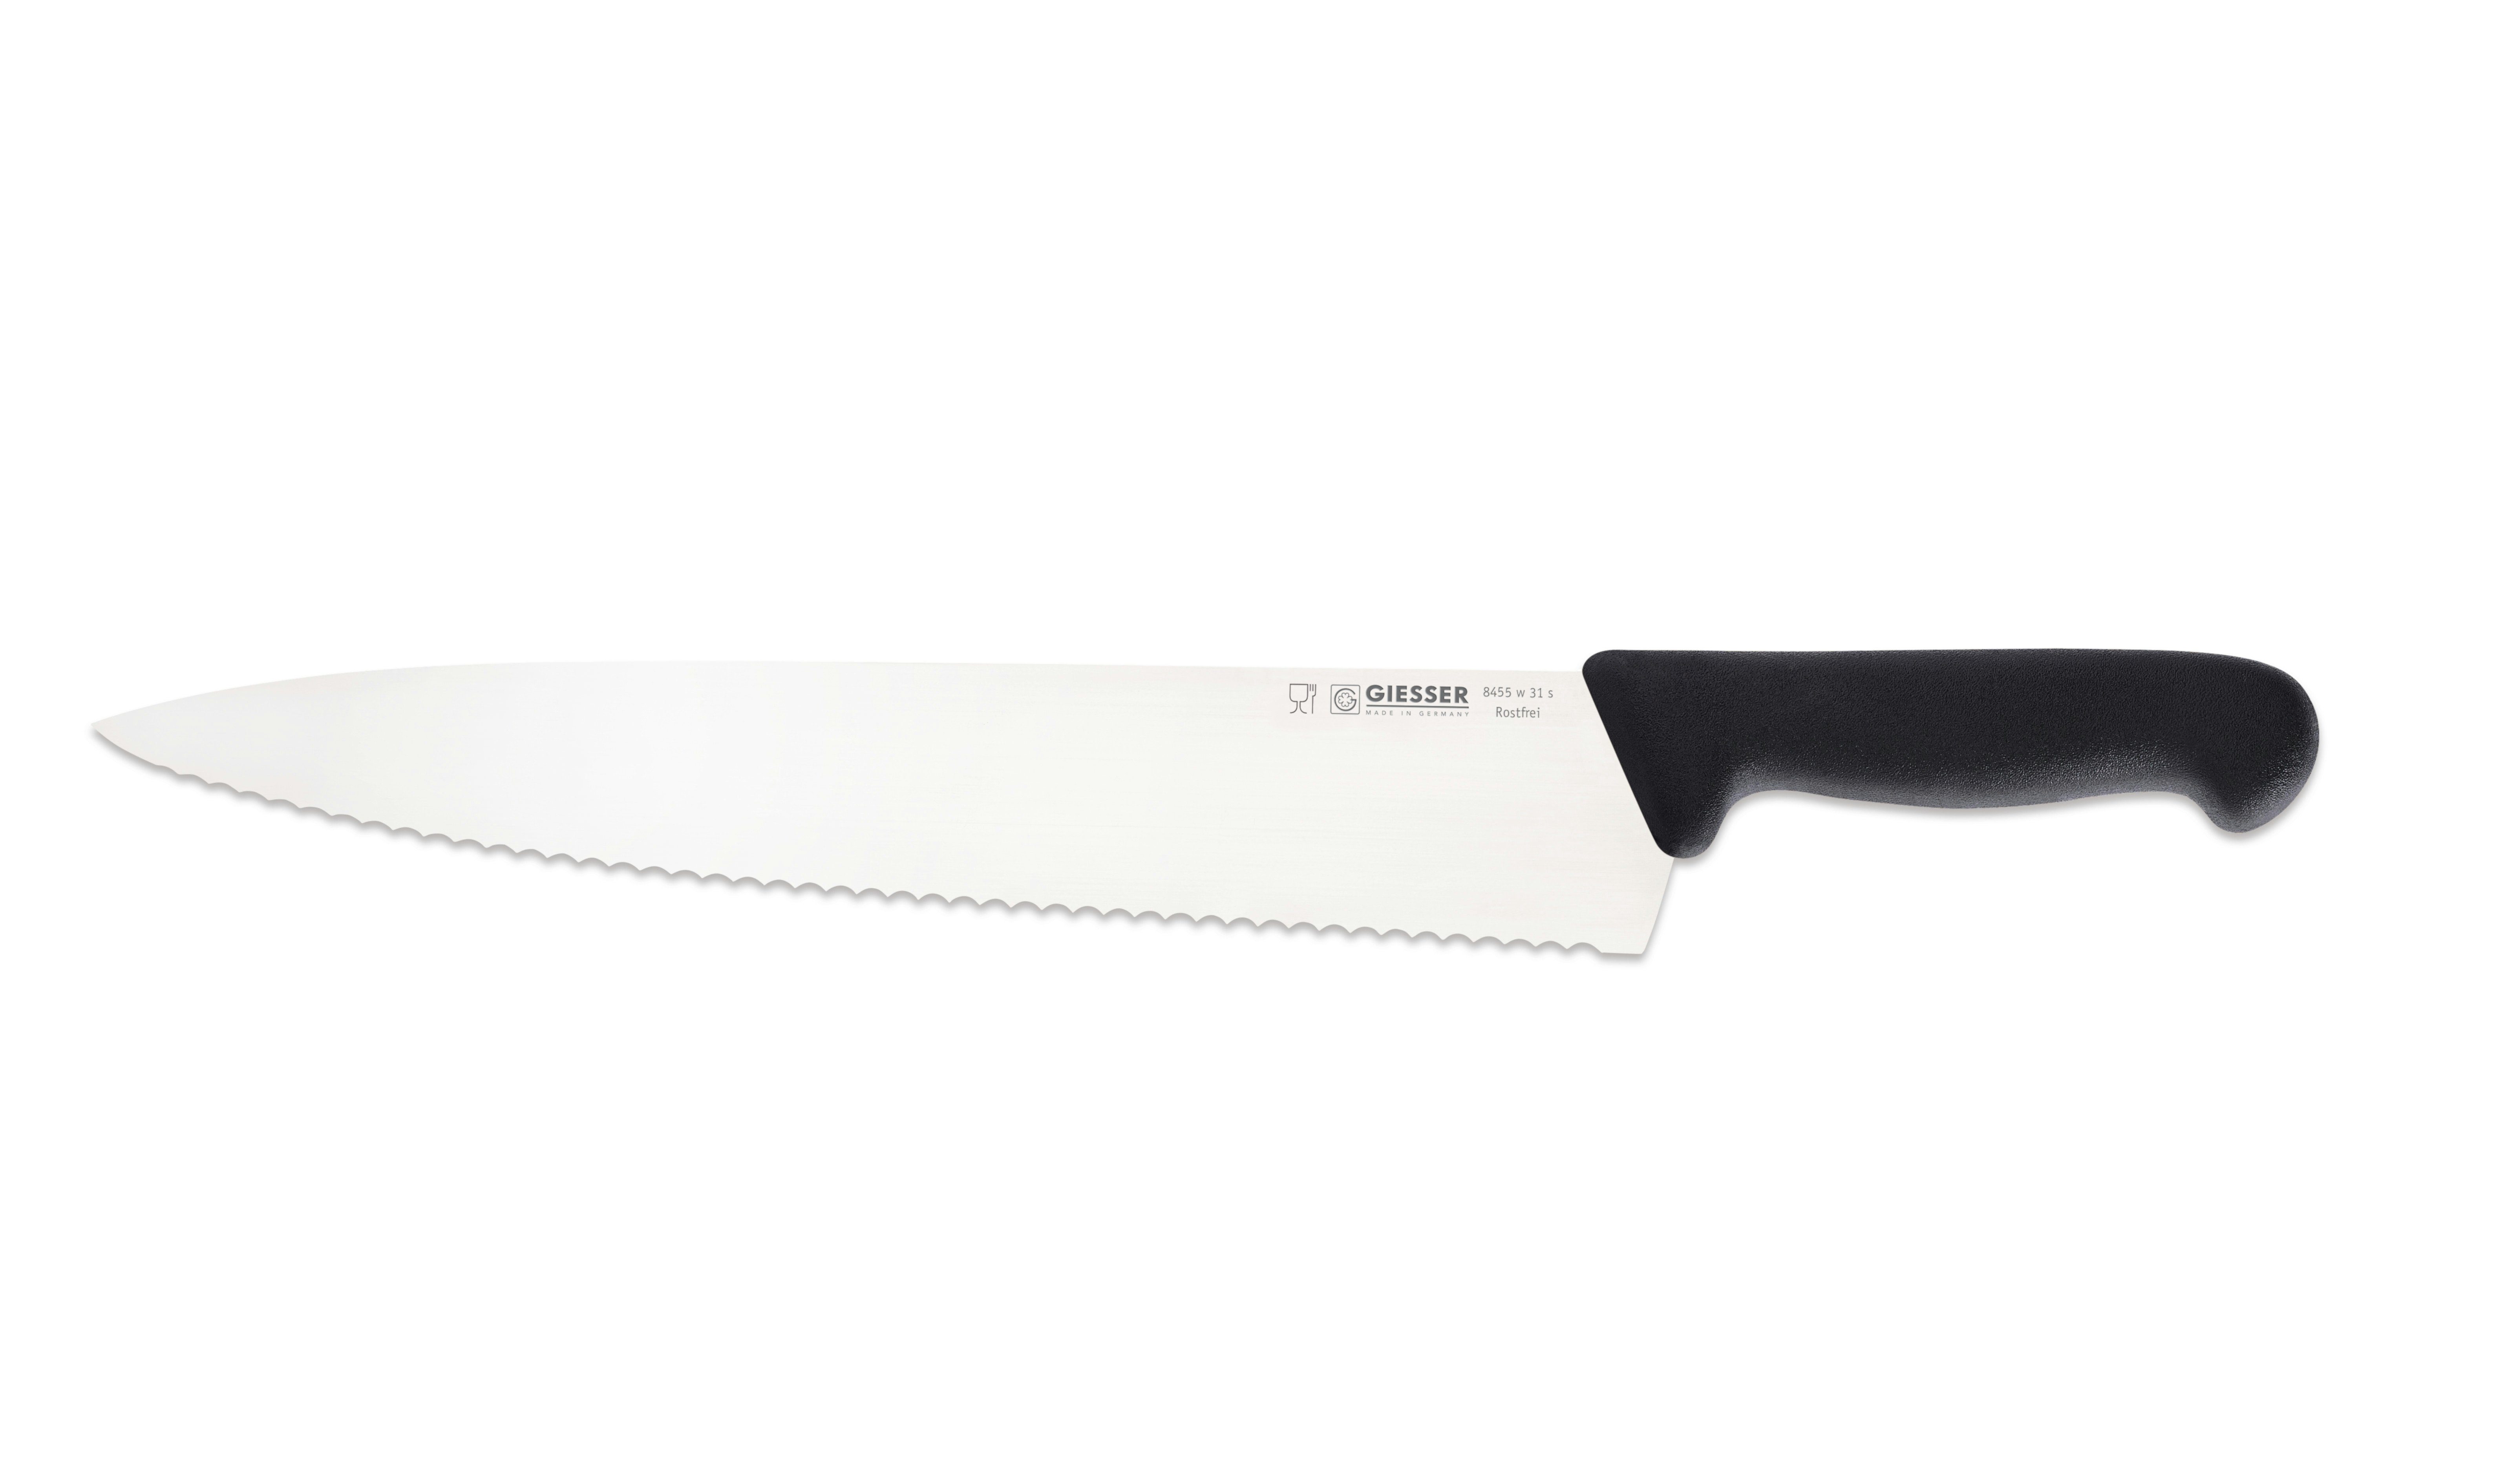 Giesser Messer Kochmesser Küchenmesser breit 8455, Rostfrei, breite Form, scharf, Handabzug, Ideal für jede Küche schwarz-Welle